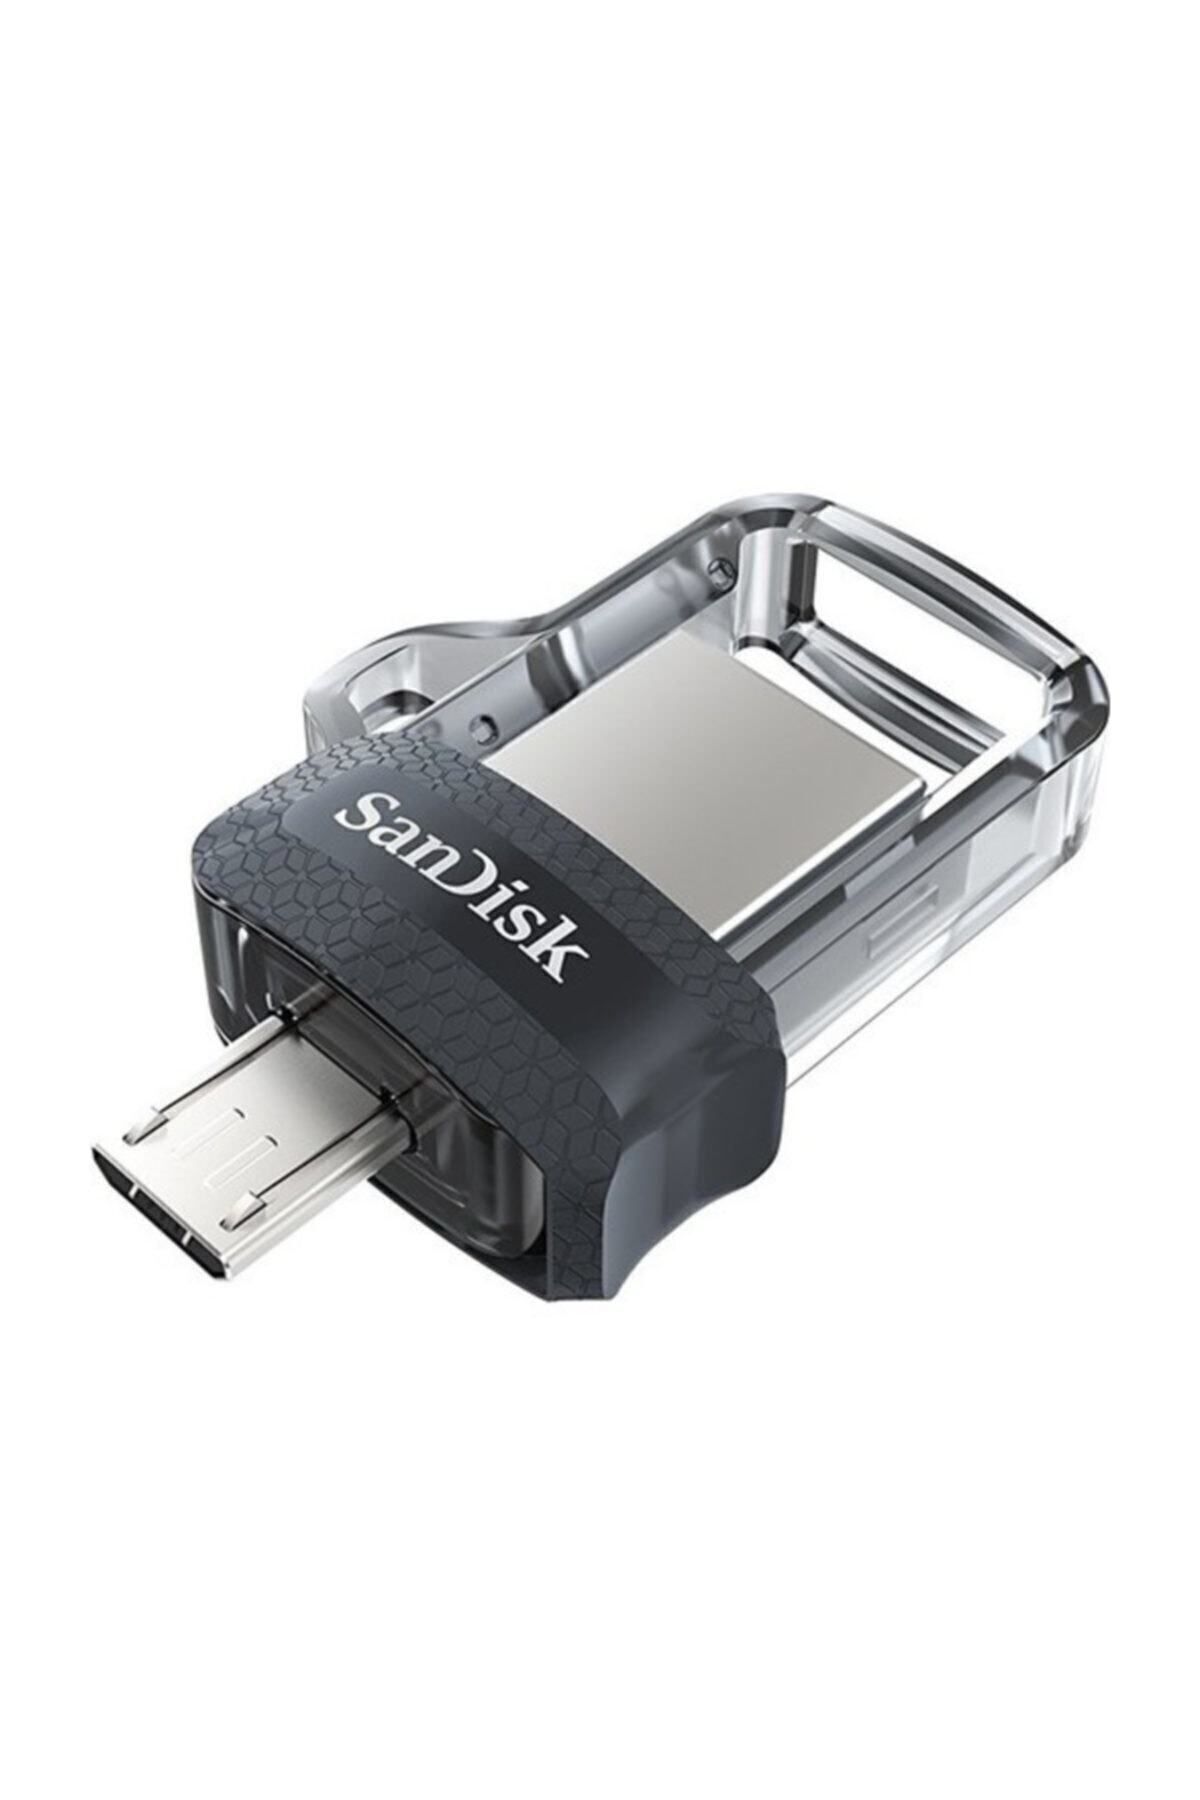 Sandisk Ultra Dual Drive Micro Sd 128gb Otg M3.0 Usb Bellek Sddd3-128g-g46